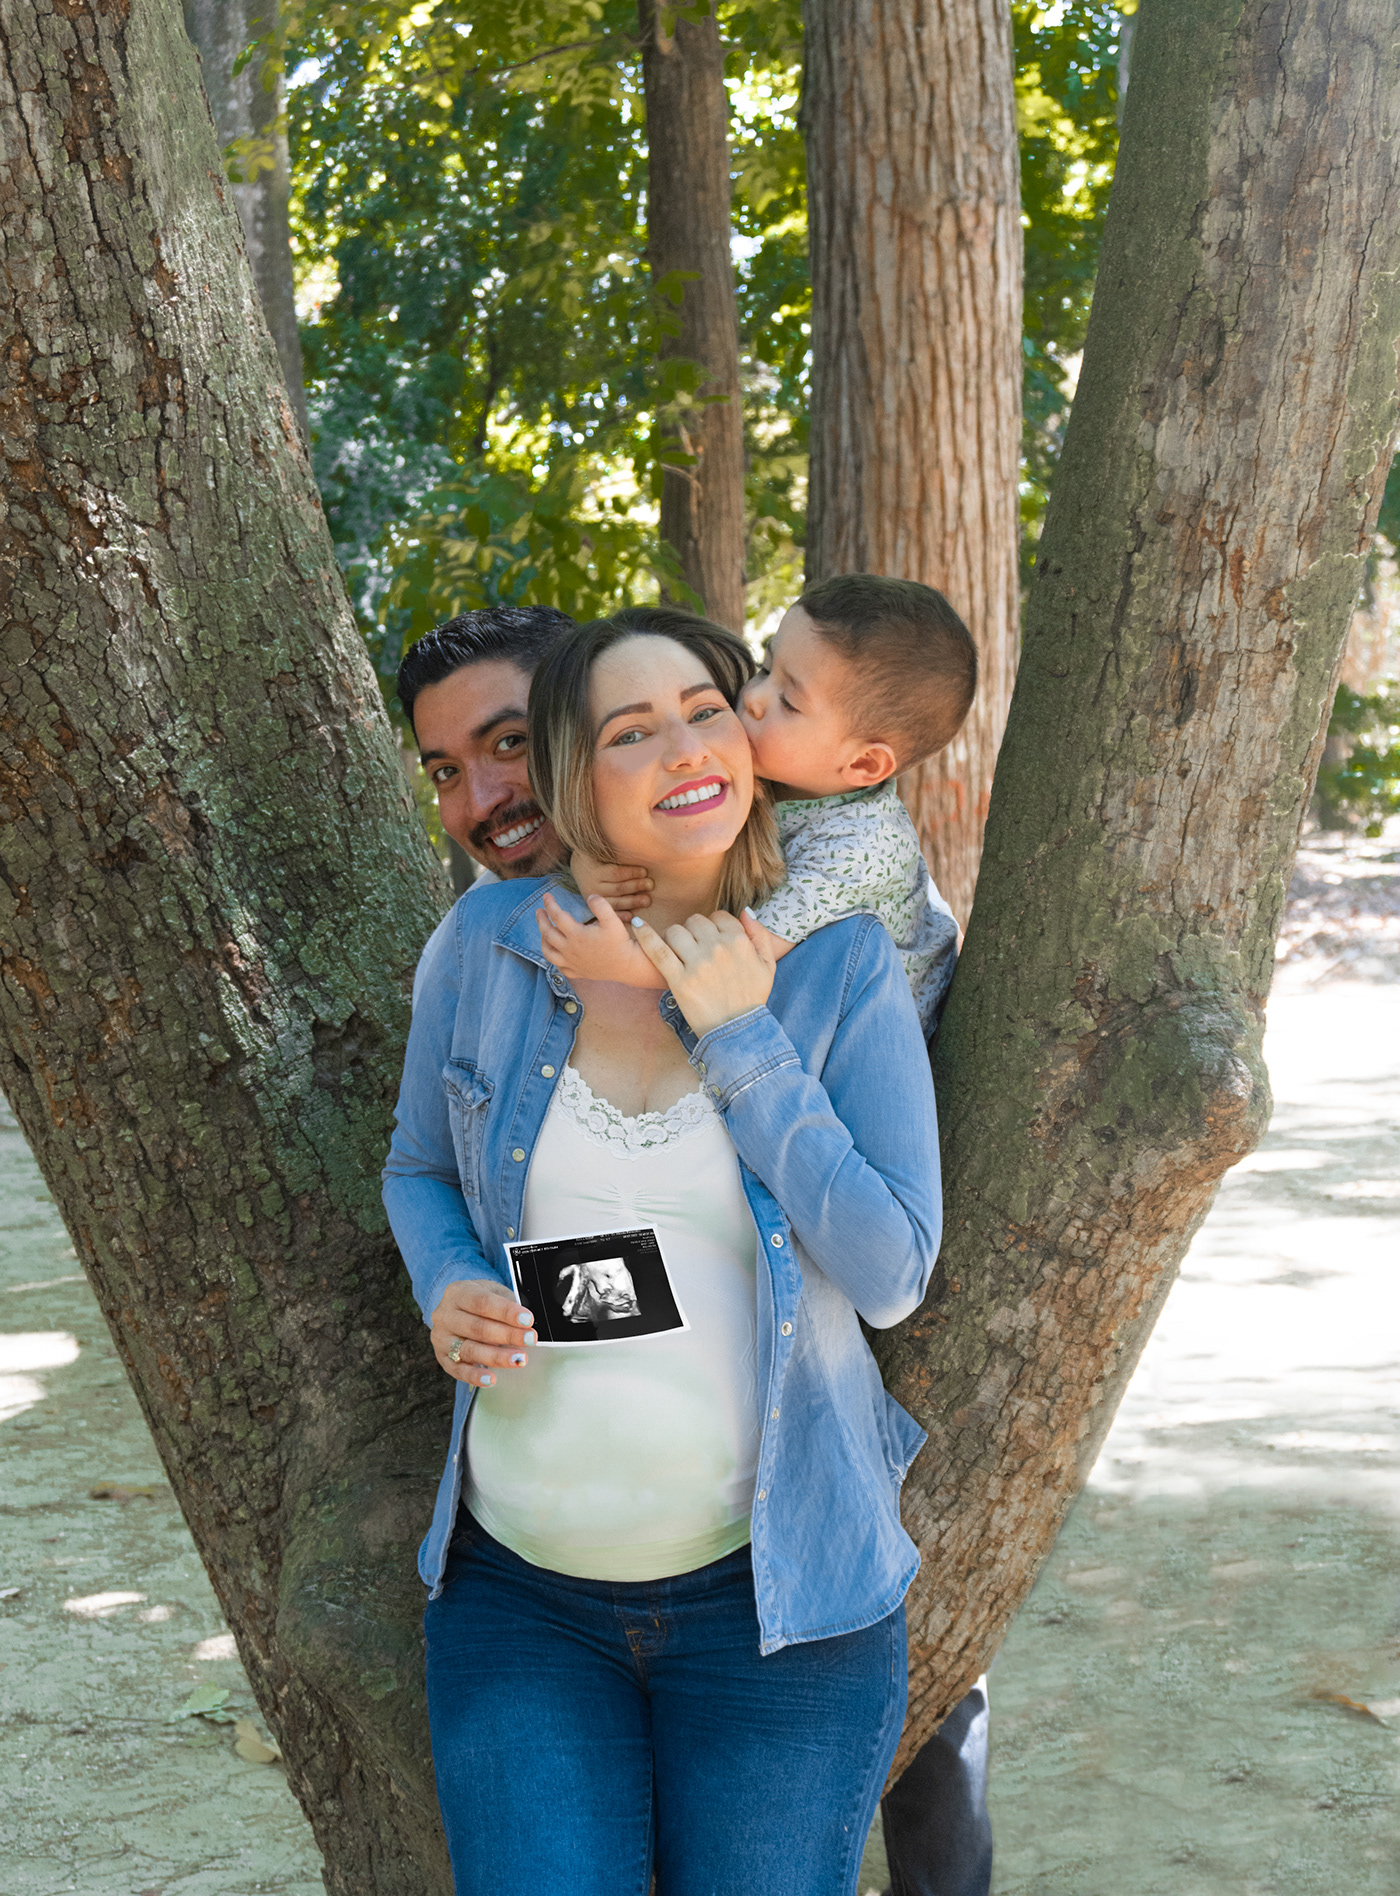 prenatal embarazo Fotografia fotografo Fotografía Digital Photography  photographer familia fotografia de embarazo